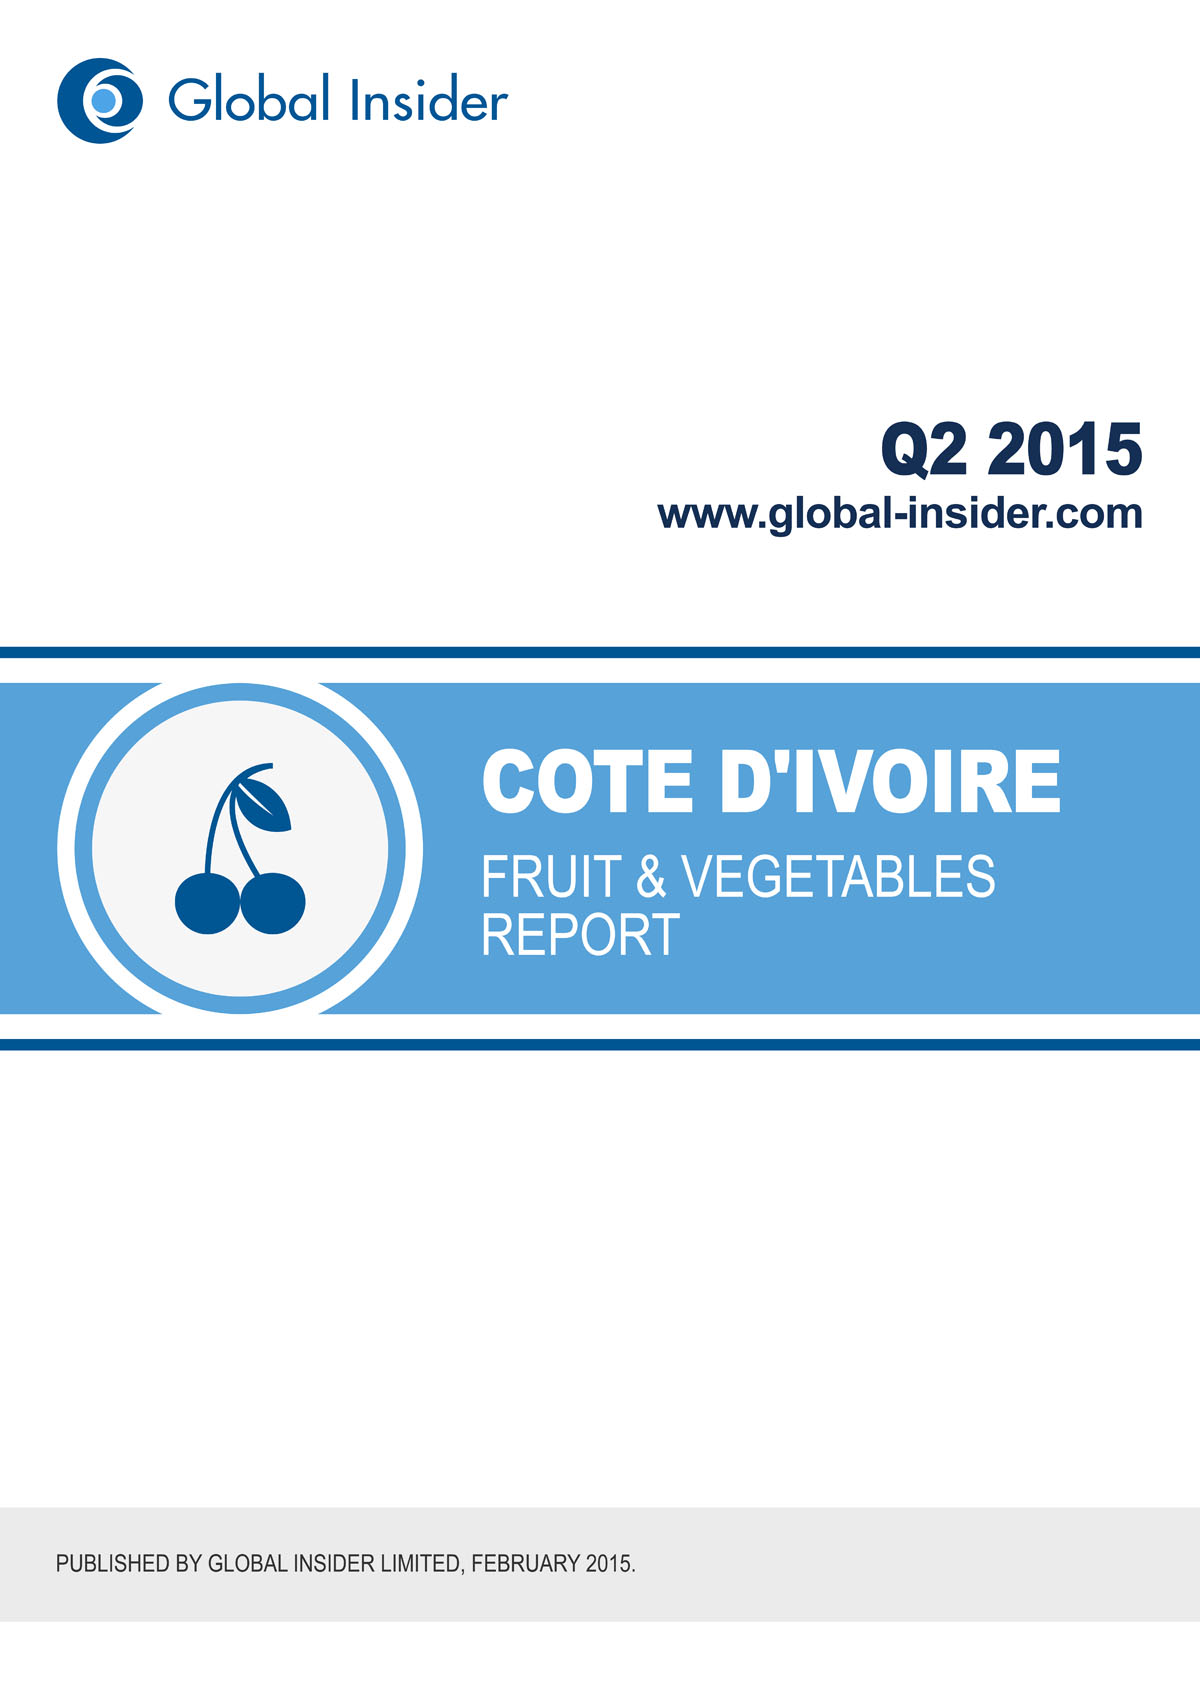 Cote d'Ivoire Fruit & Vegetables Report